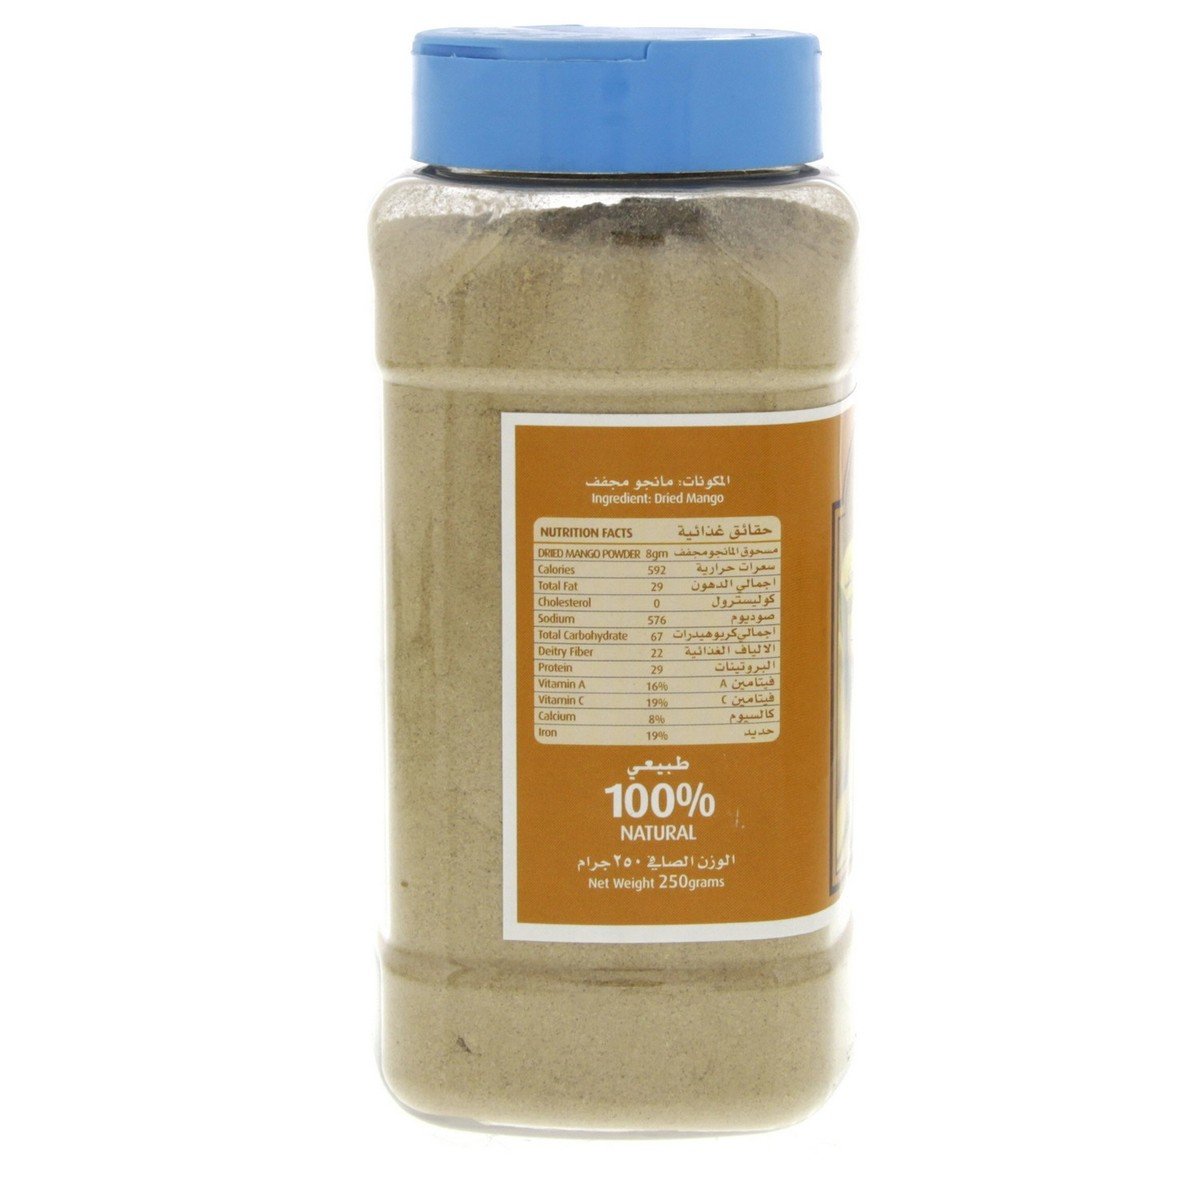 Al Fares Dried Mango Powder 250 g